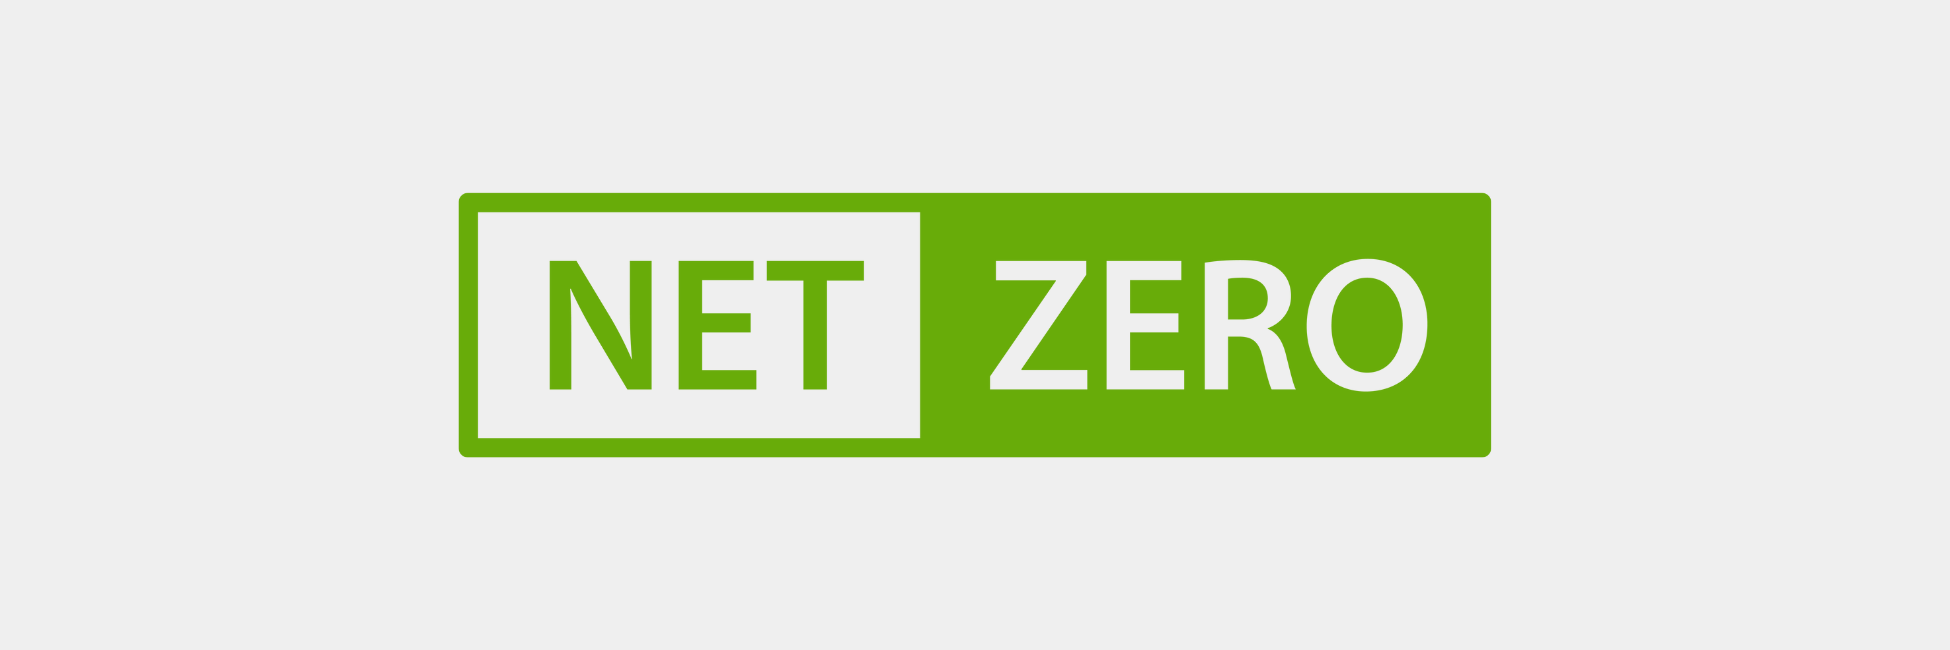 Net zero logo in green